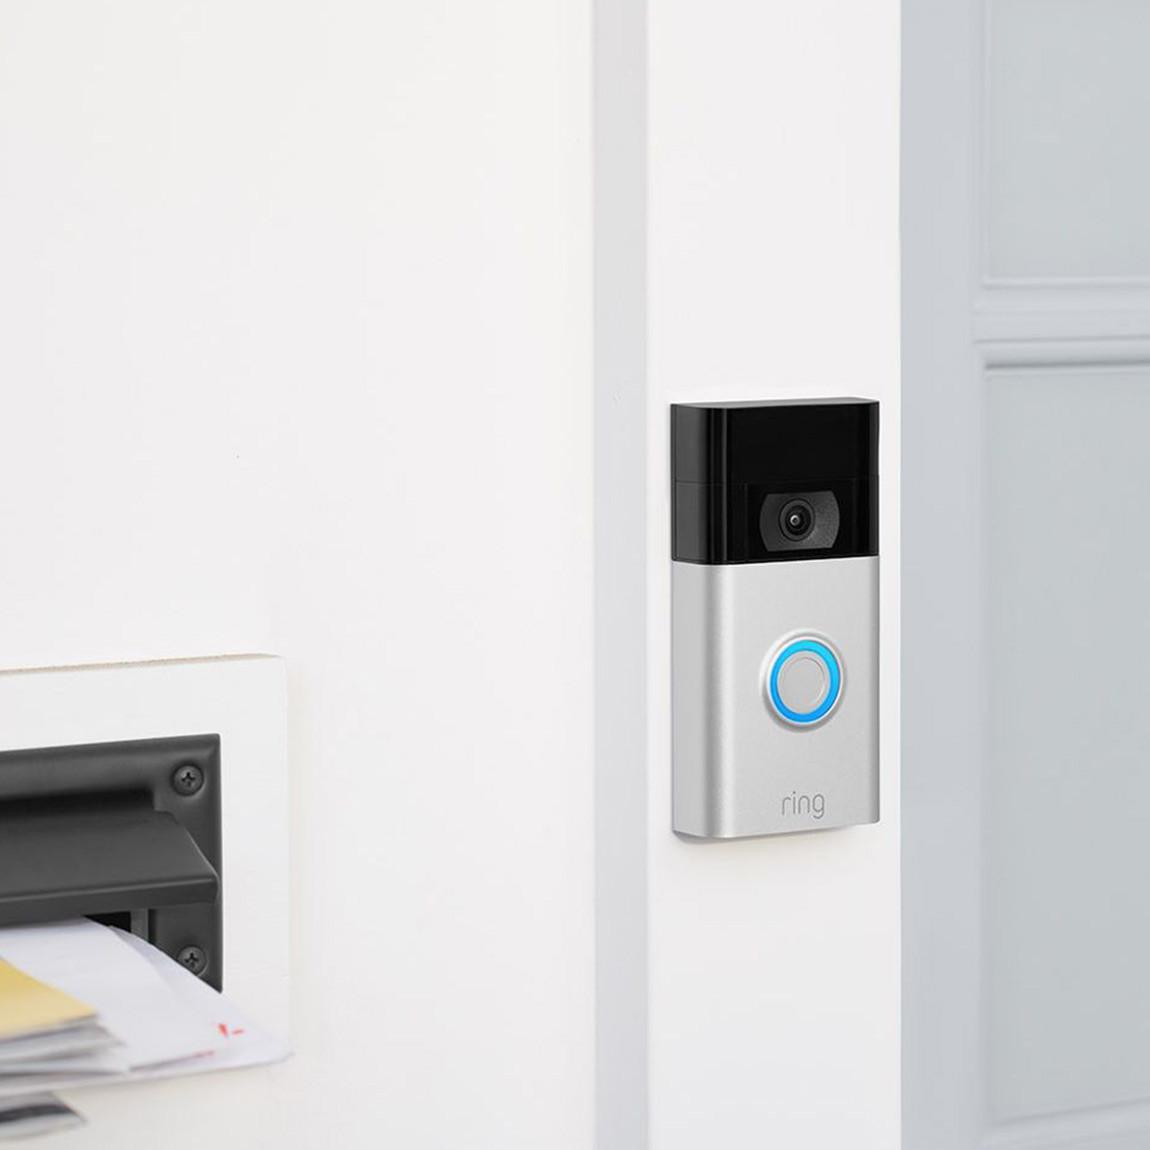 Ring Video Doorbell (2. Generation) - Video-Türklingel am Türrahmen schräge Ansicht